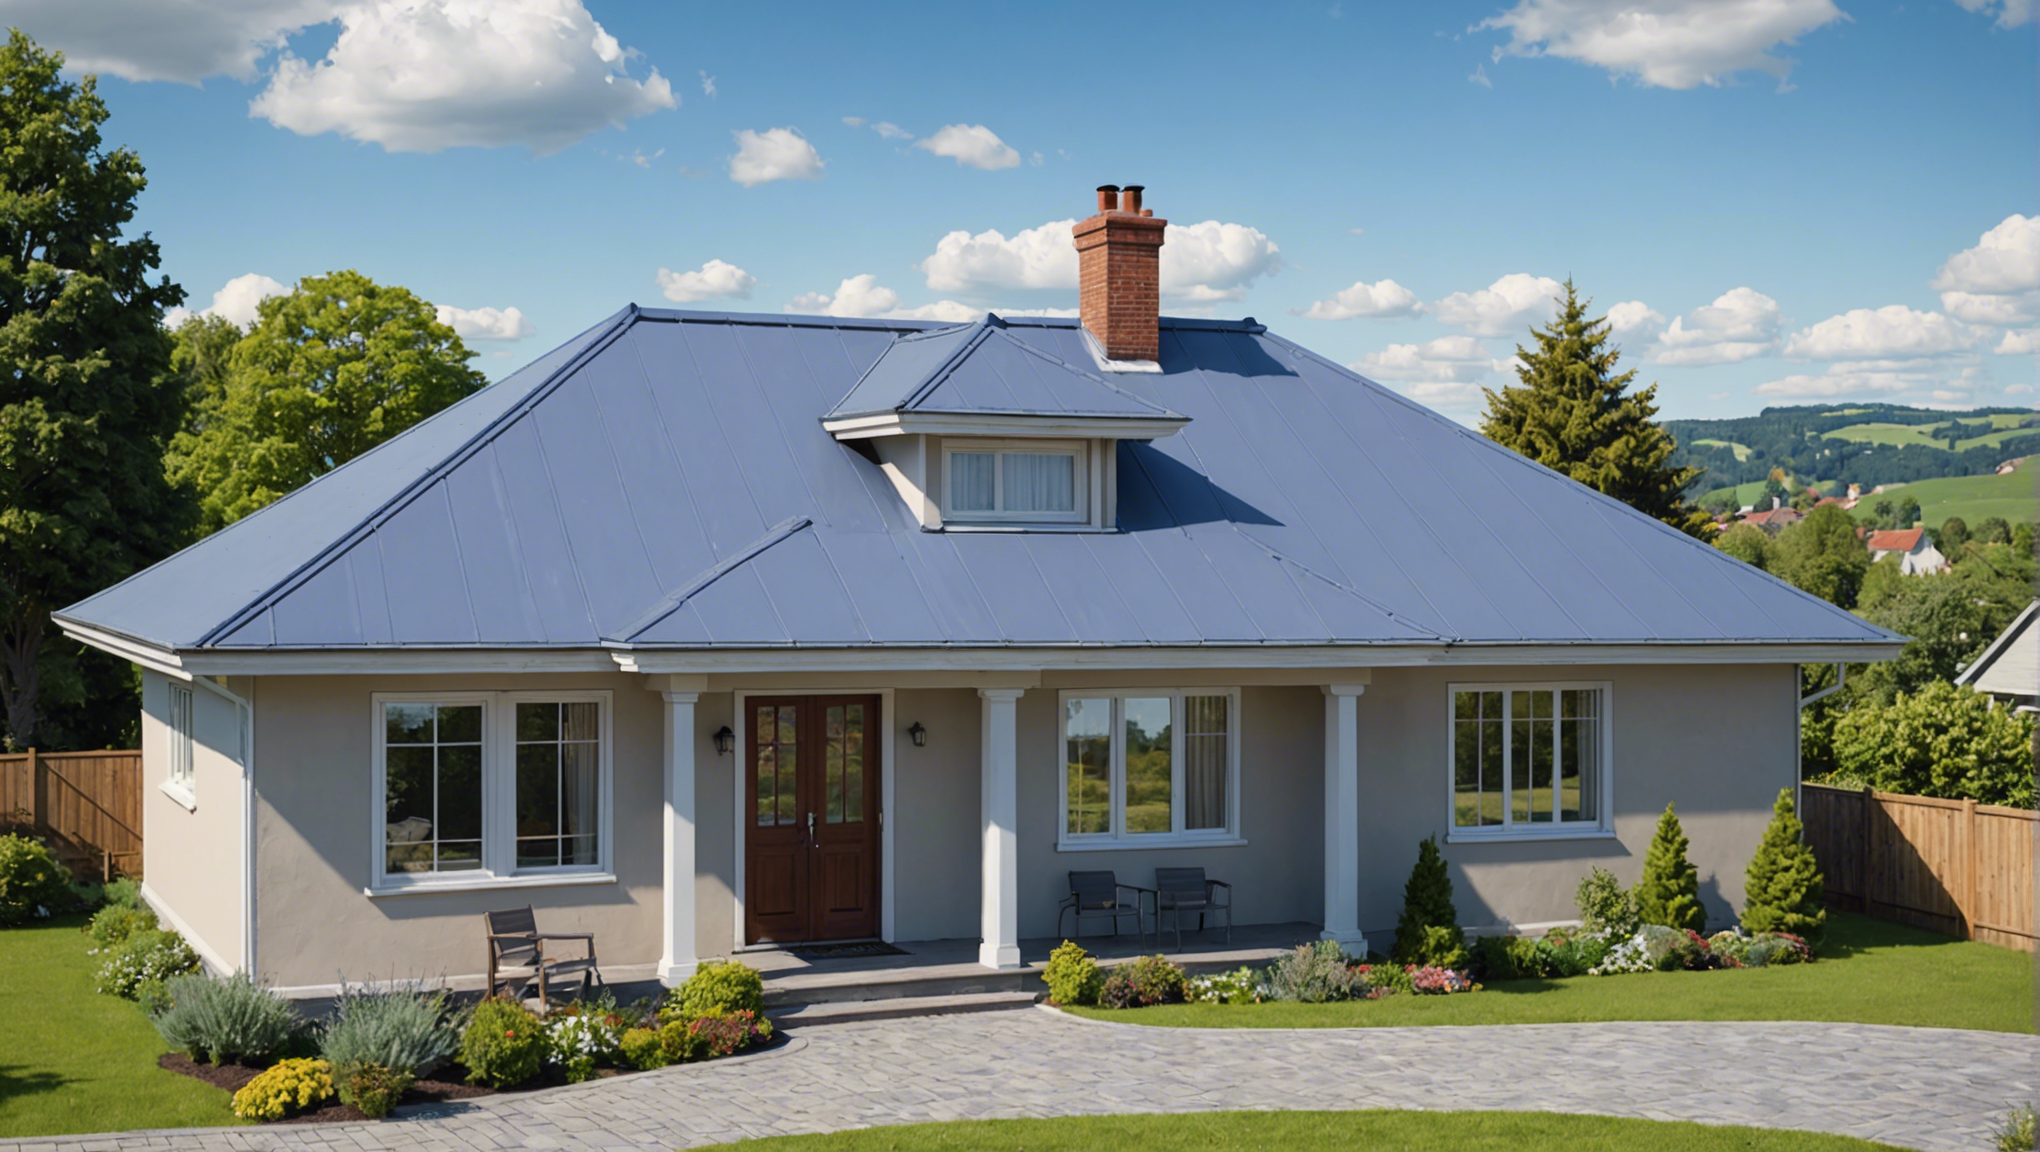 découvrez comment peindre un toit de manière efficace grâce à nos conseils pratiques et nos astuces professionnelles.